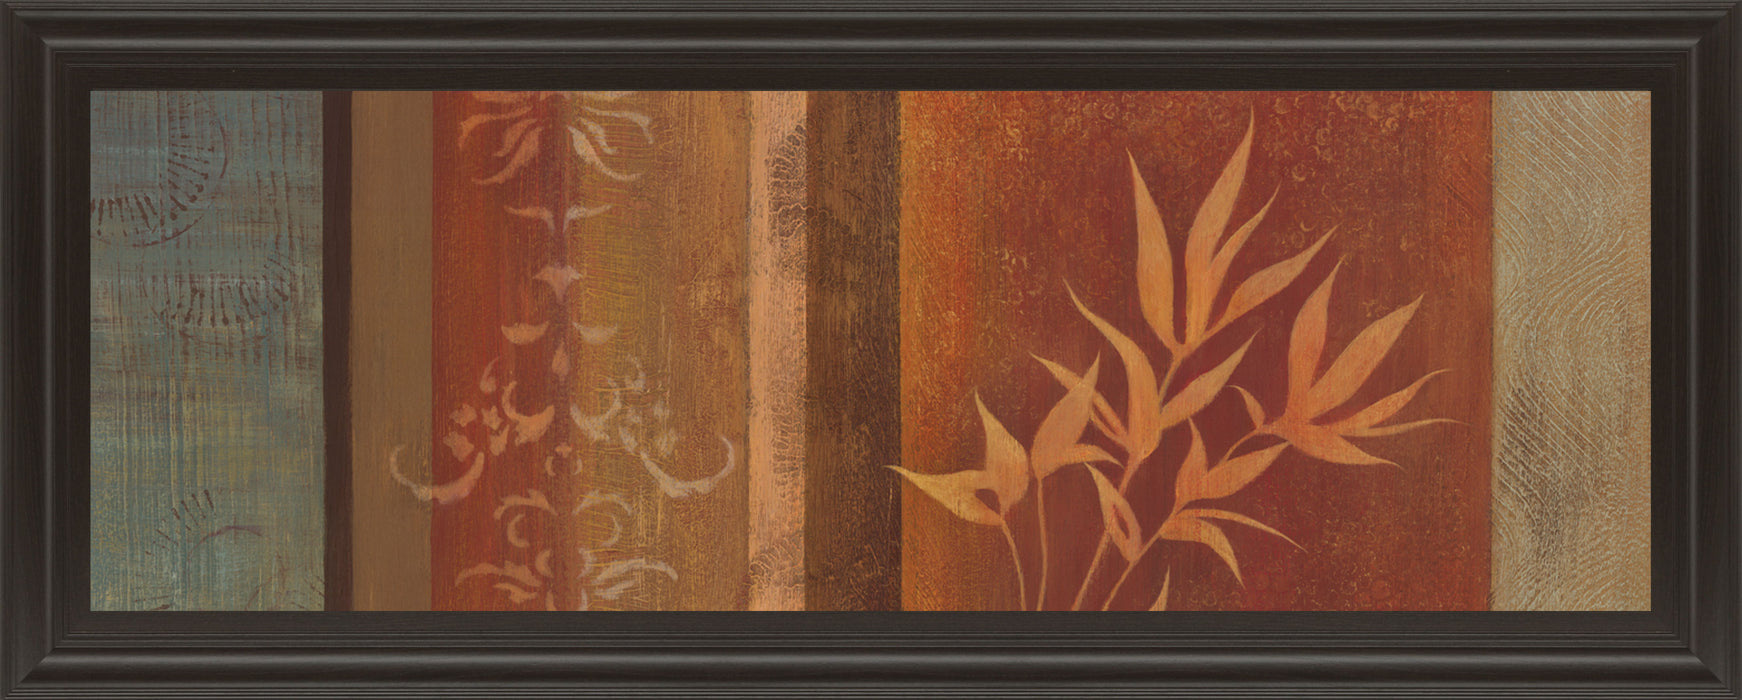 Leaf Silhouette Il By Jordan Grey - Framed Print Wall Art - Dark Brown